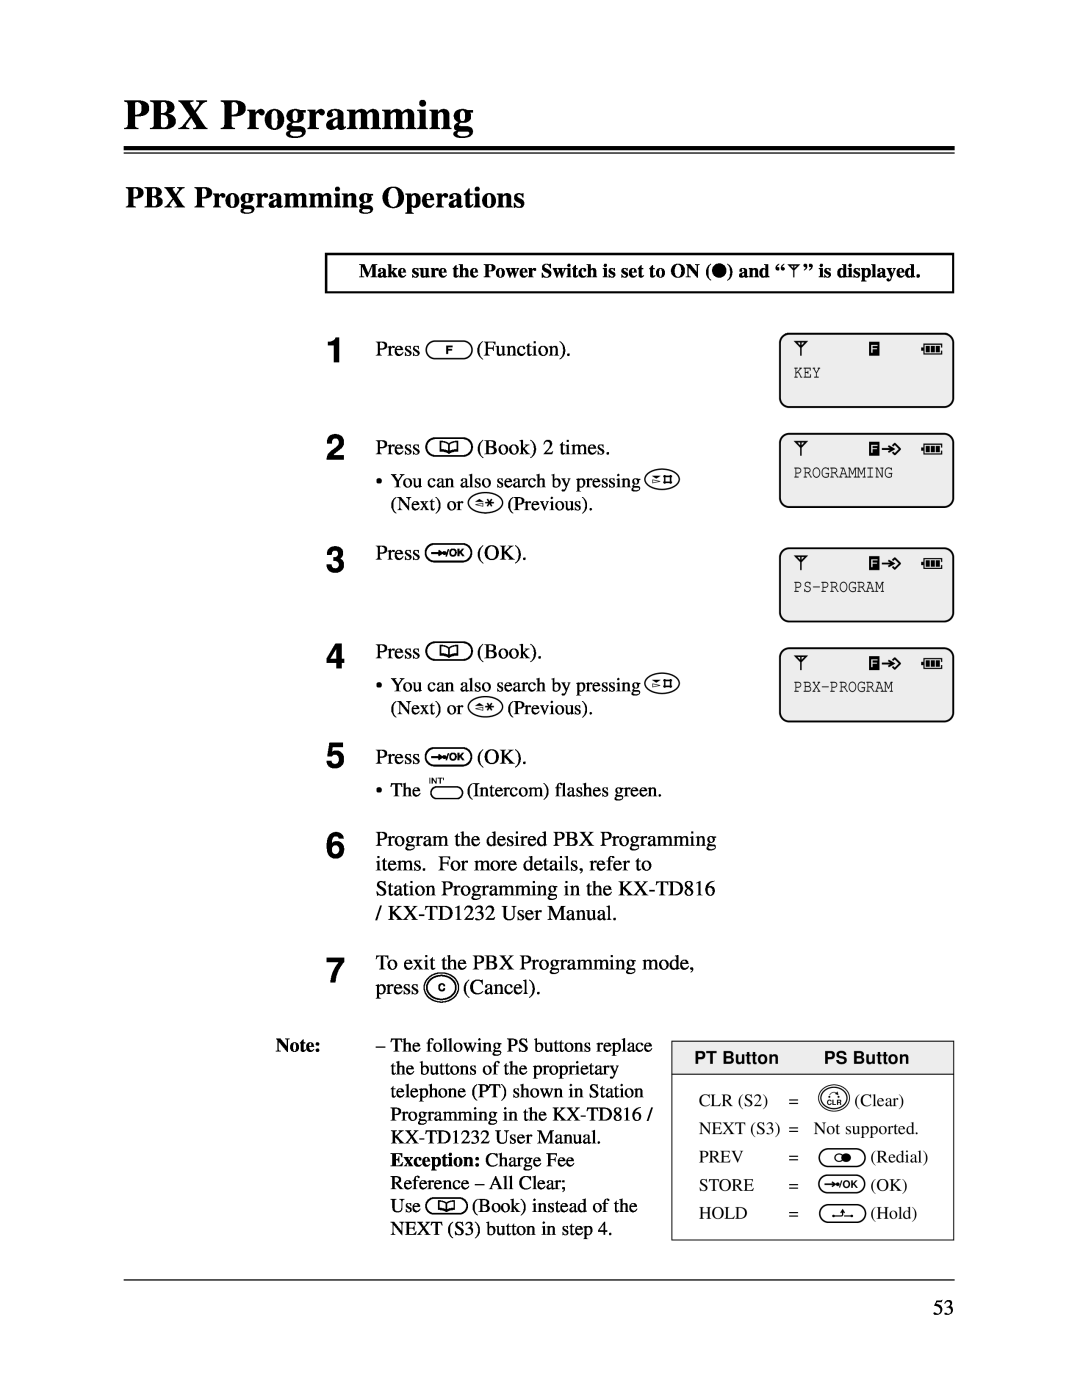 Panasonic KX-TD816CE, KX-TD1232CE user manual 1 2 3 4 5, PBX Programming Operations 